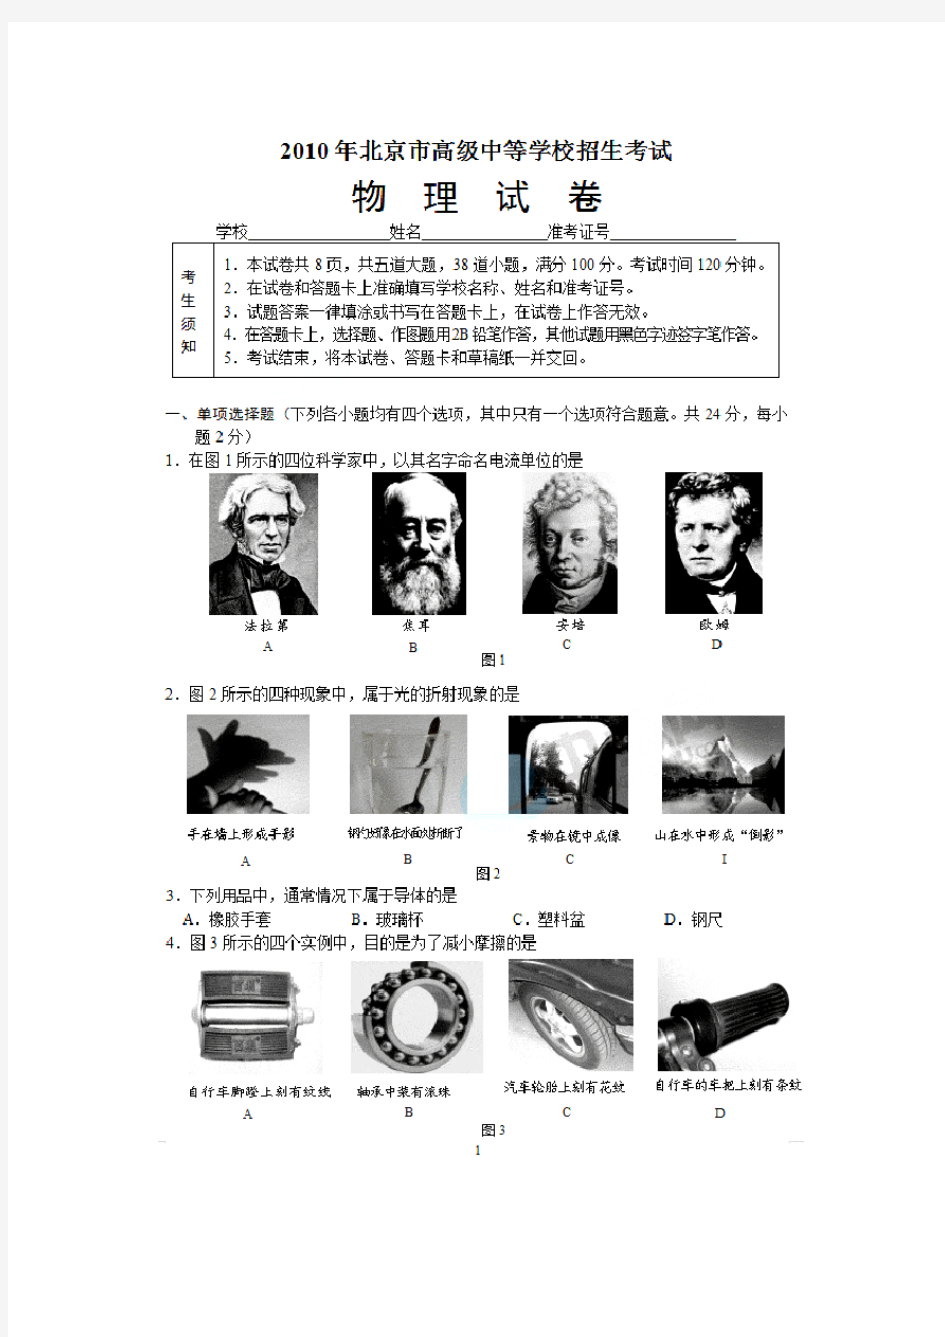 (免费)2010年北京中考物理试题及答案(试卷分析)